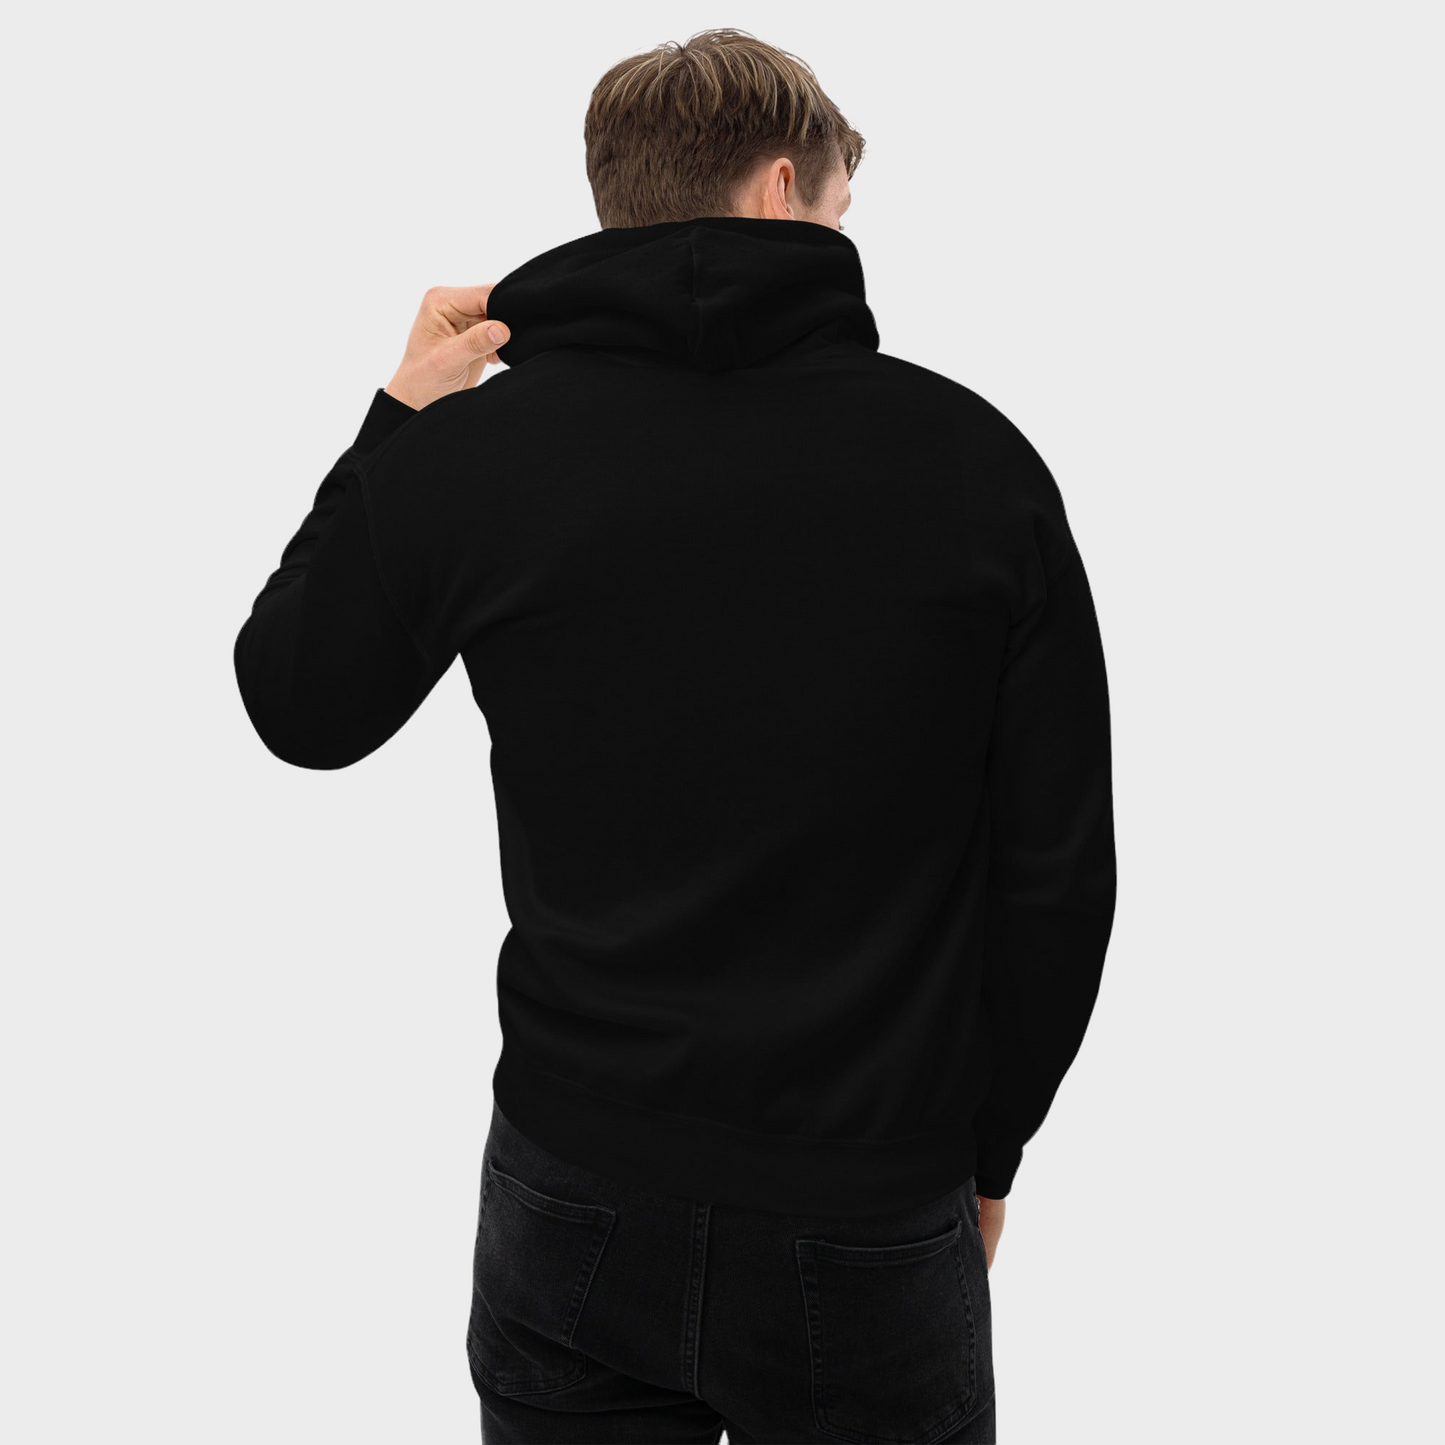 AK RACEFAB "Big Logo" Premium Pullover Hoodie in Black